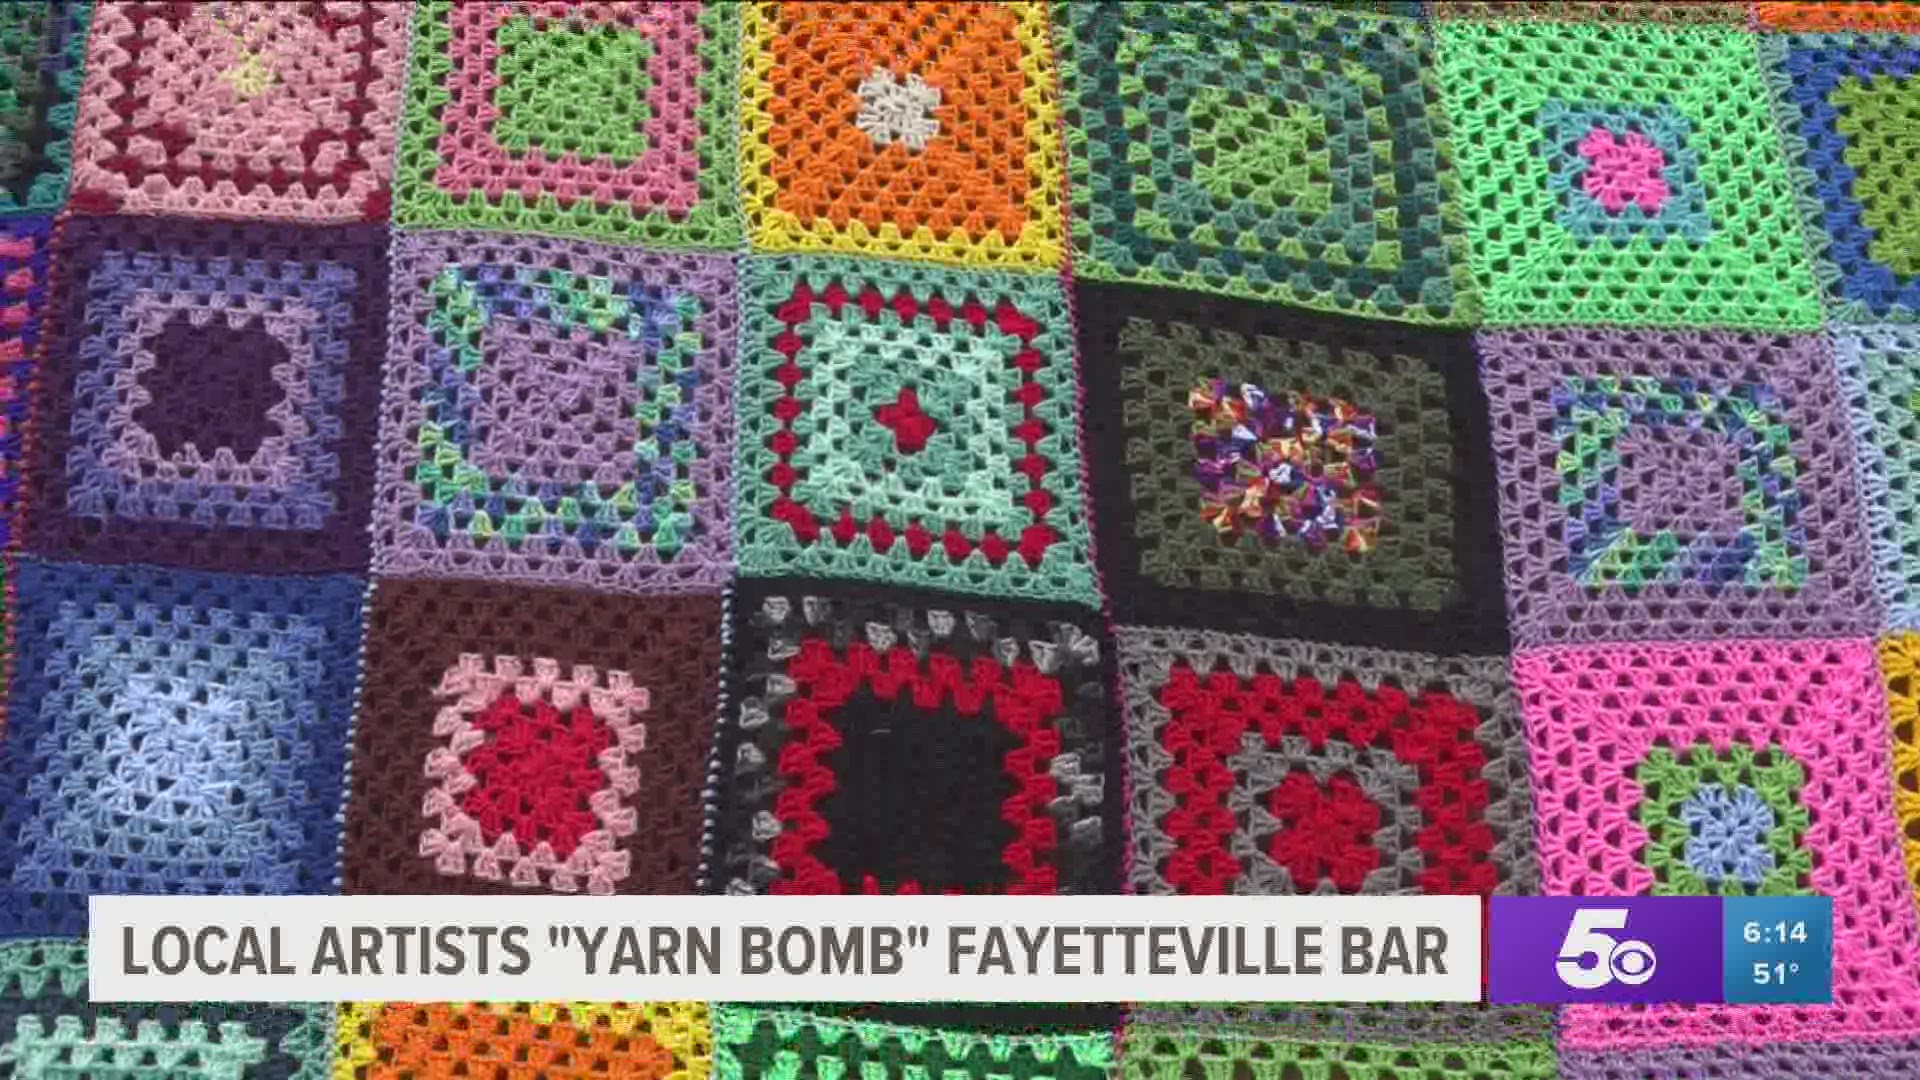 Local artists 'yarn bomb' Fayetteville bar